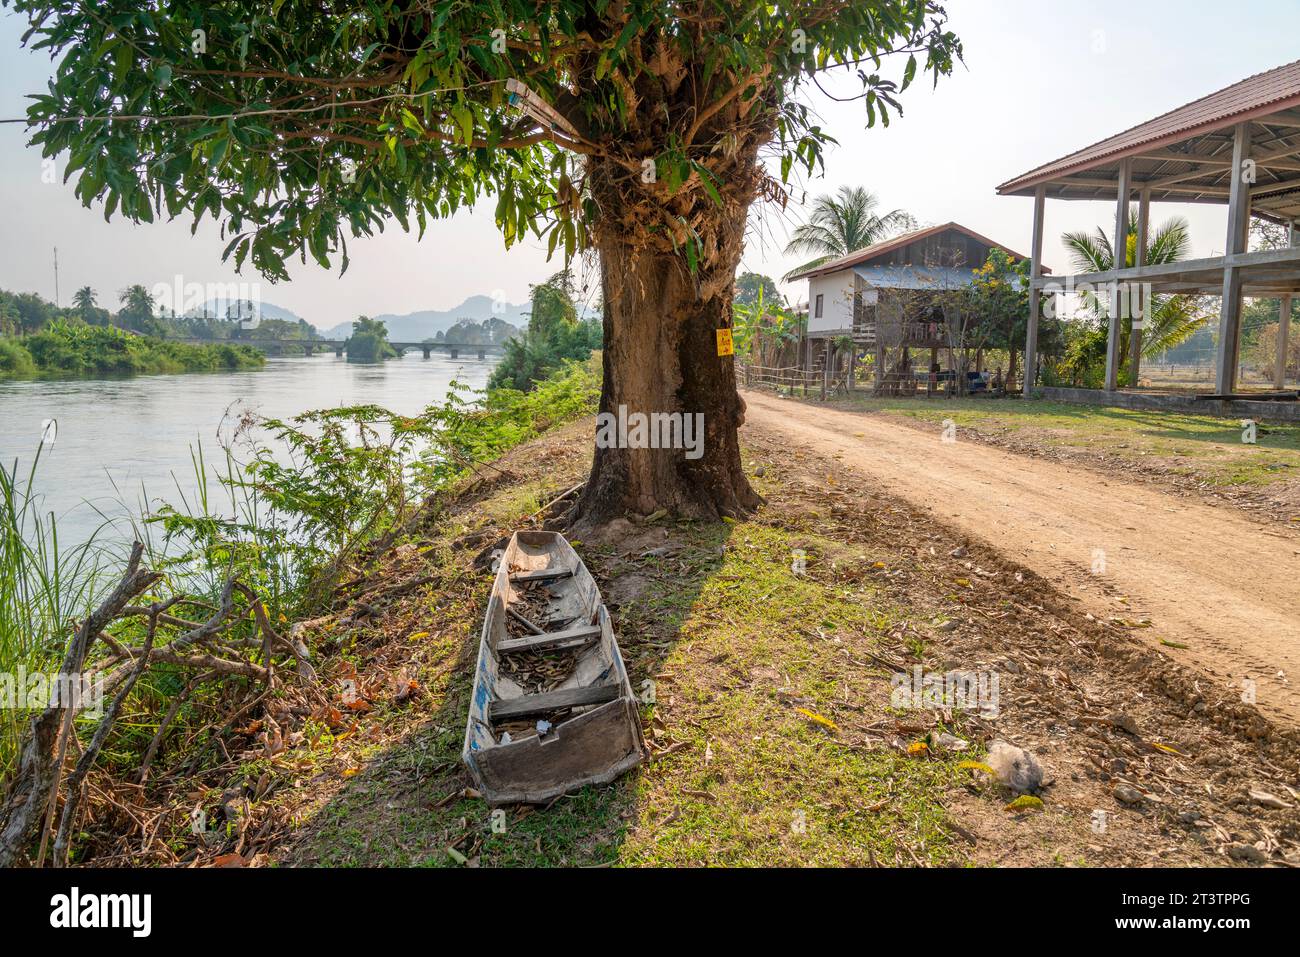 Tranquillo paesaggio fluviale rurale, antico ponte coloniale francese Don Det-Don Khon in lontananza, stretta strada sterrata che passa davanti a un albero alberato a strapiombo Foto Stock